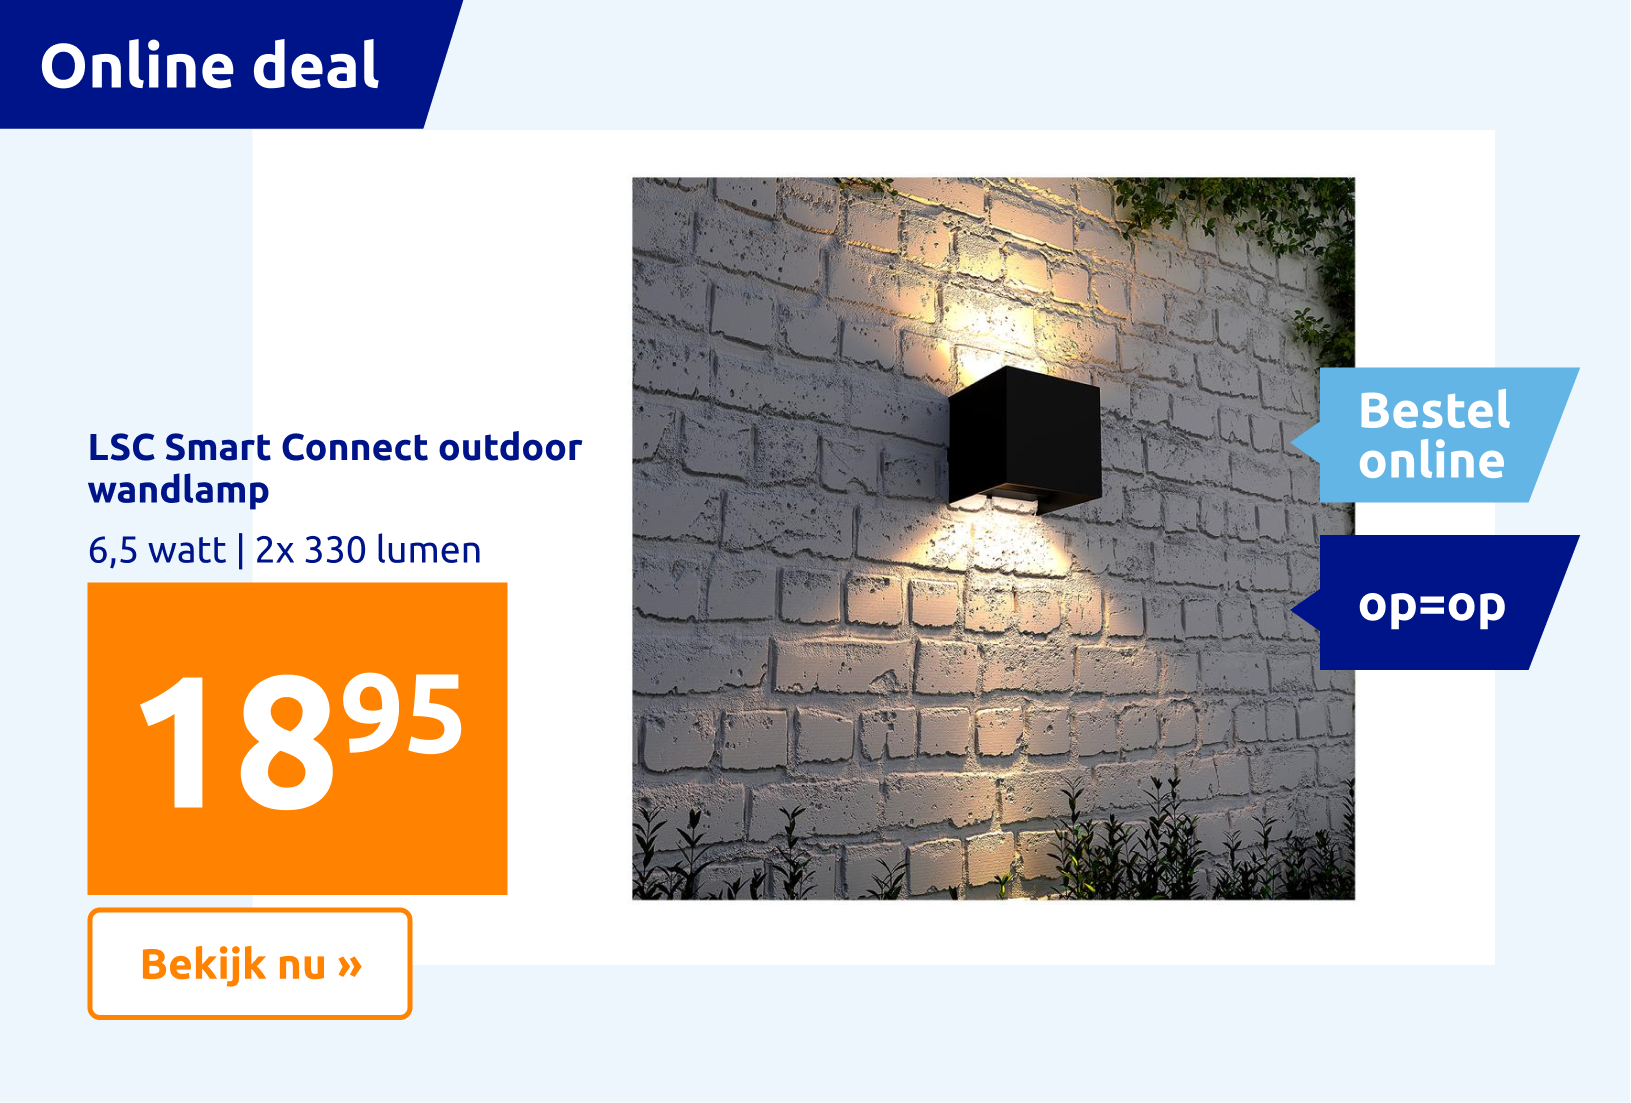 https://shop.action.com/nl-nl/p/8712879151593/lsc-smart-connect-outdoor-wandlamp?utm_source=web&utm_medium=ecomlink&utm_campaign=ecom